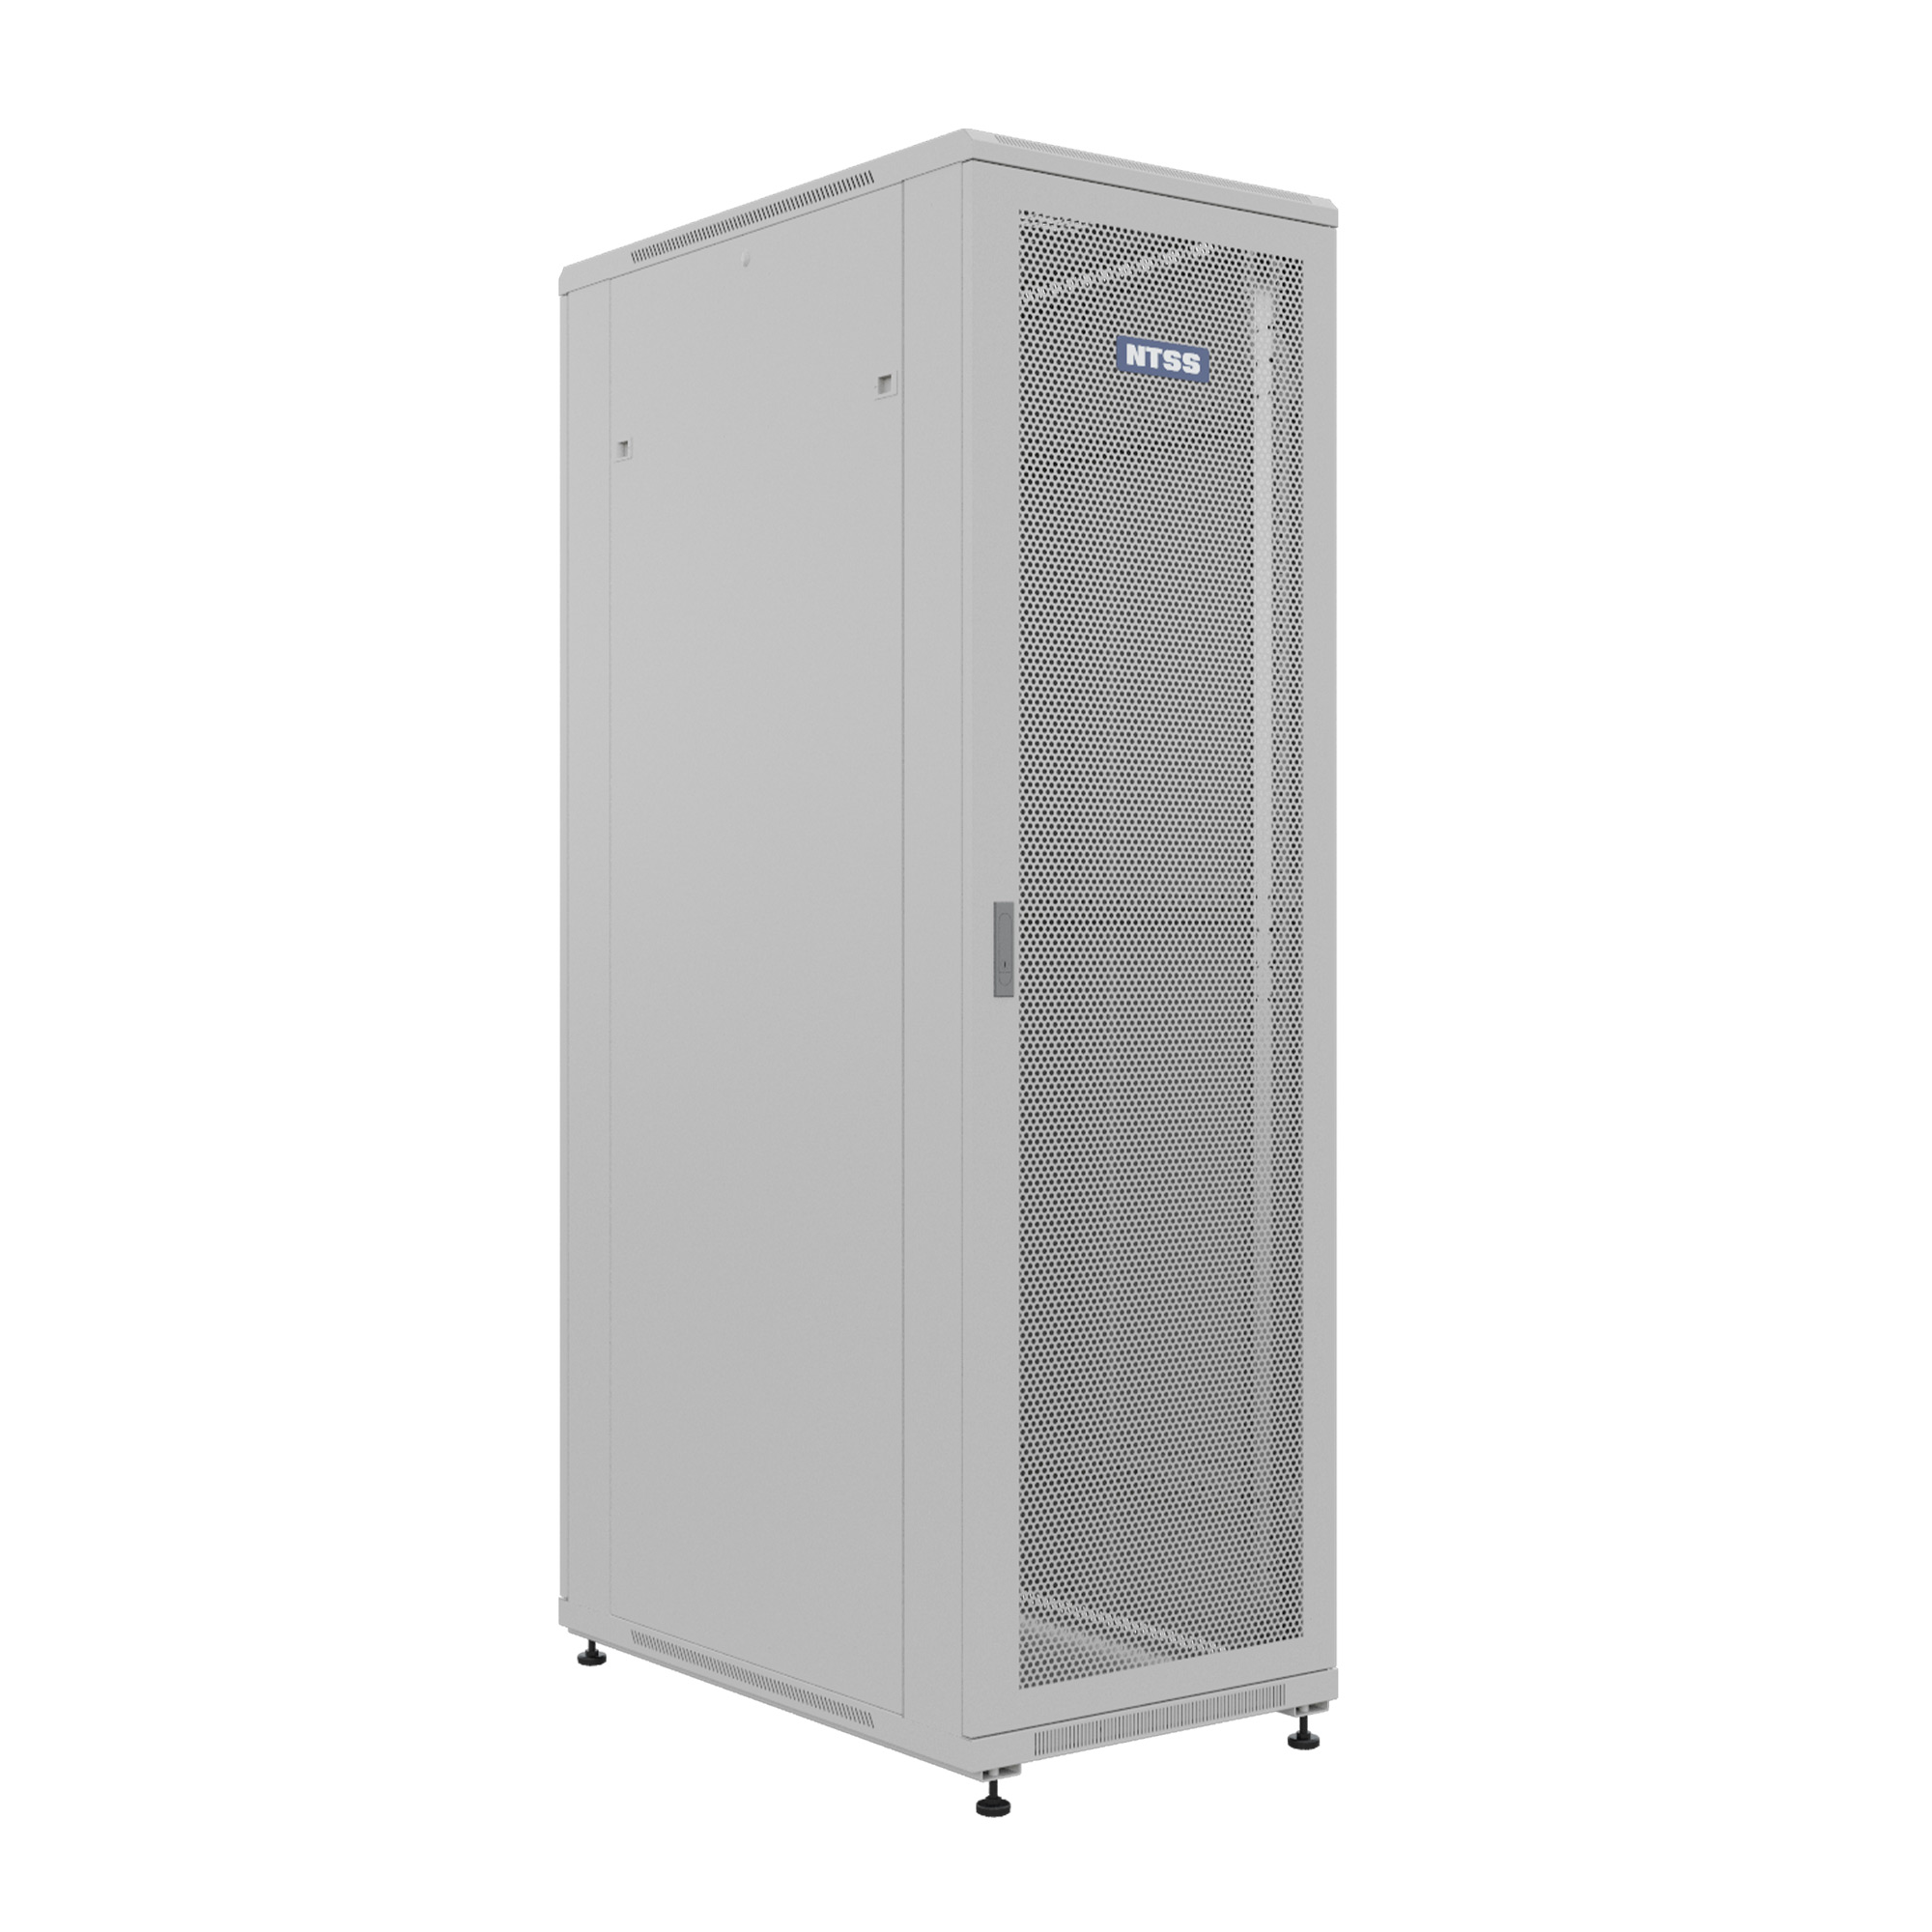 Шкаф напольный универсальный серверный NTSS R 42U 600х1000мм, 4 профиля 19, двери перфорированная и сплошная металл, боковые стенки съемные, регулируемые опоры, разобранный, серый RAL 7035